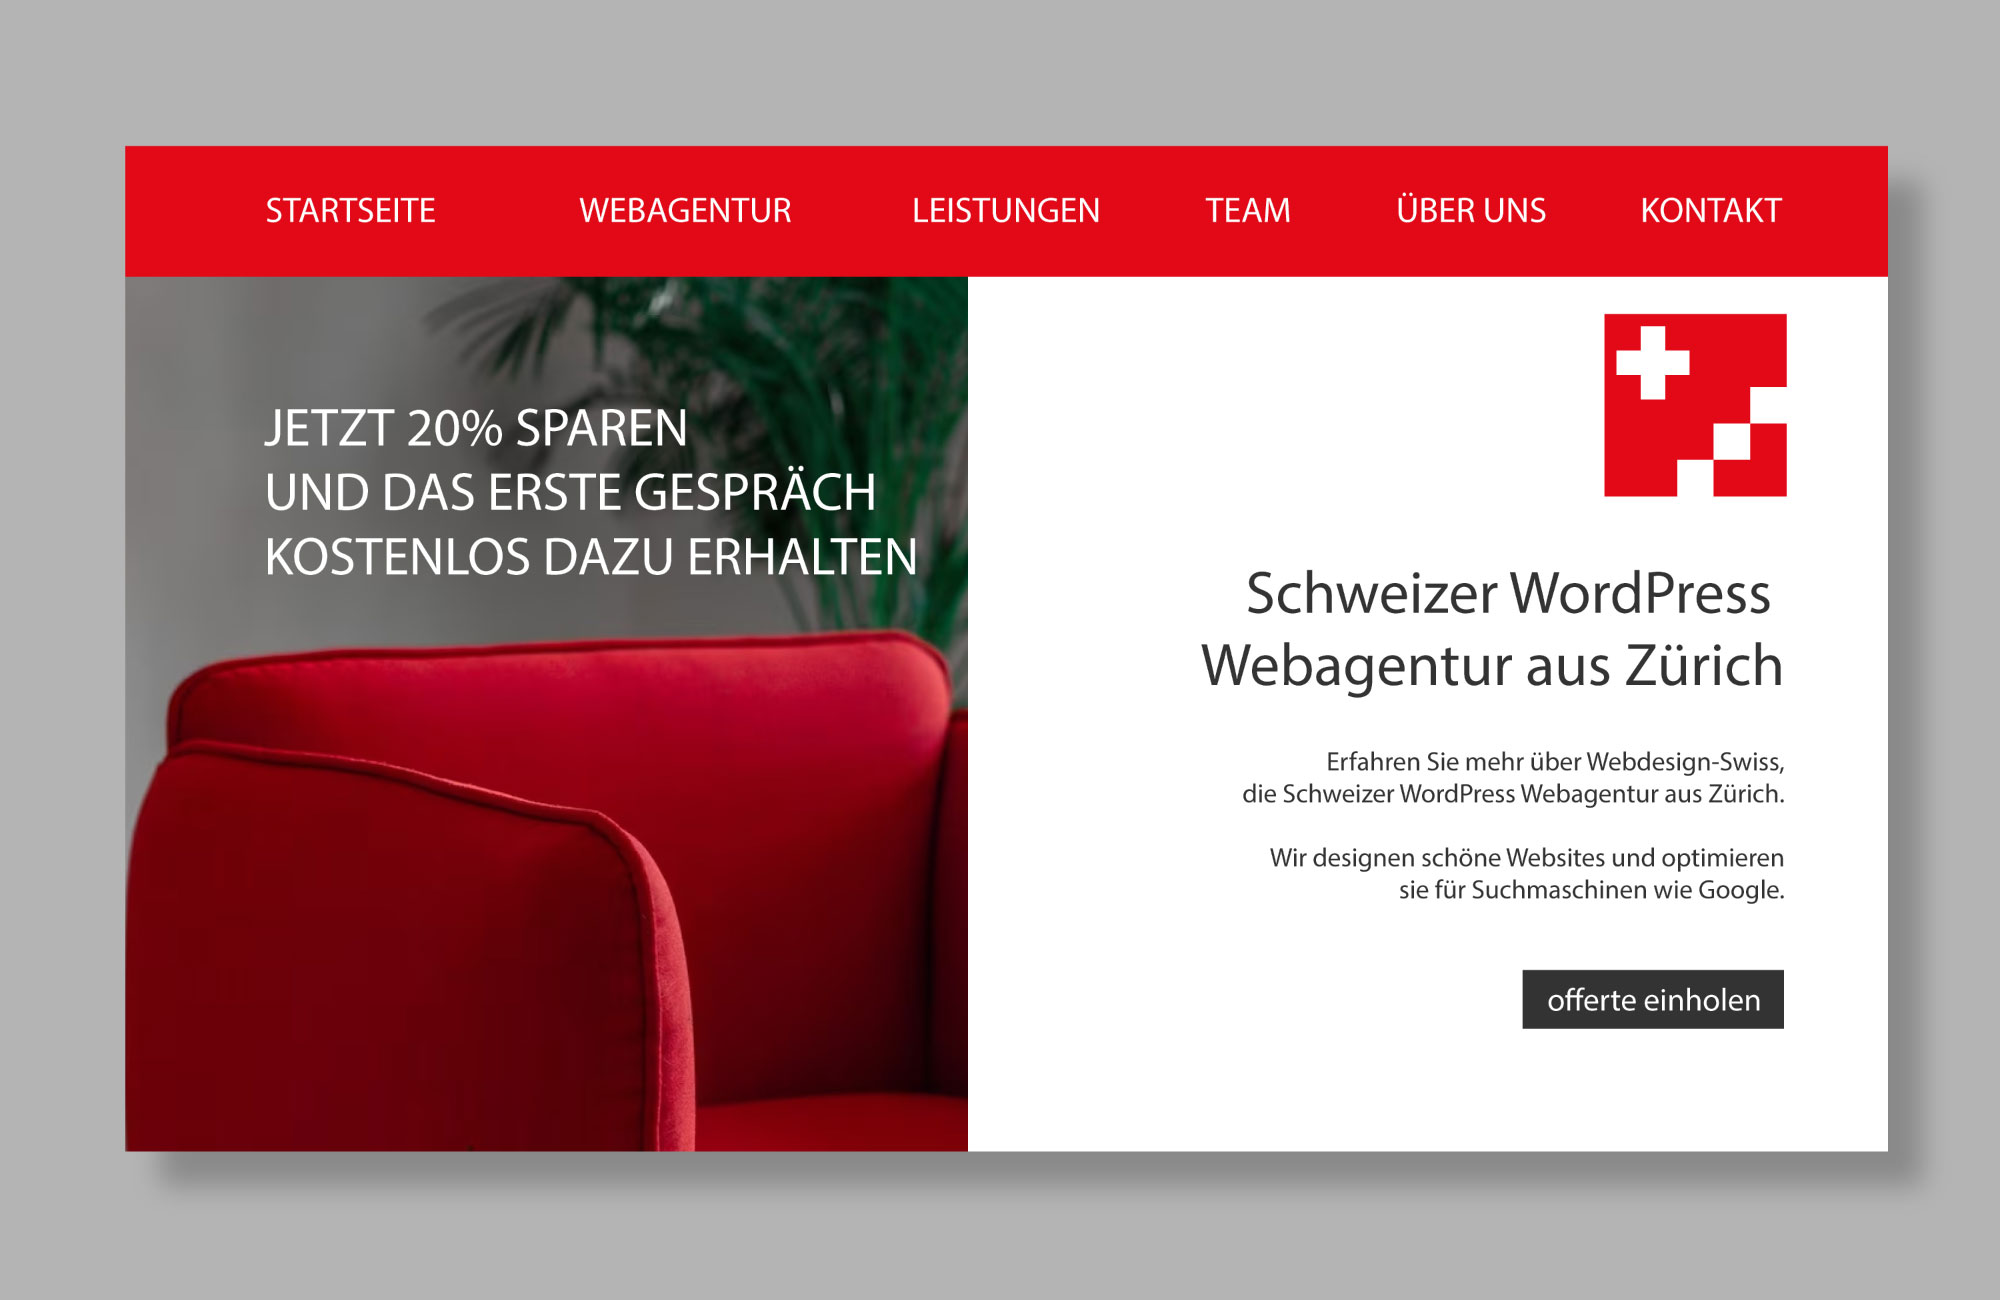 Schweizer WordPress Webagentur aus Zürich